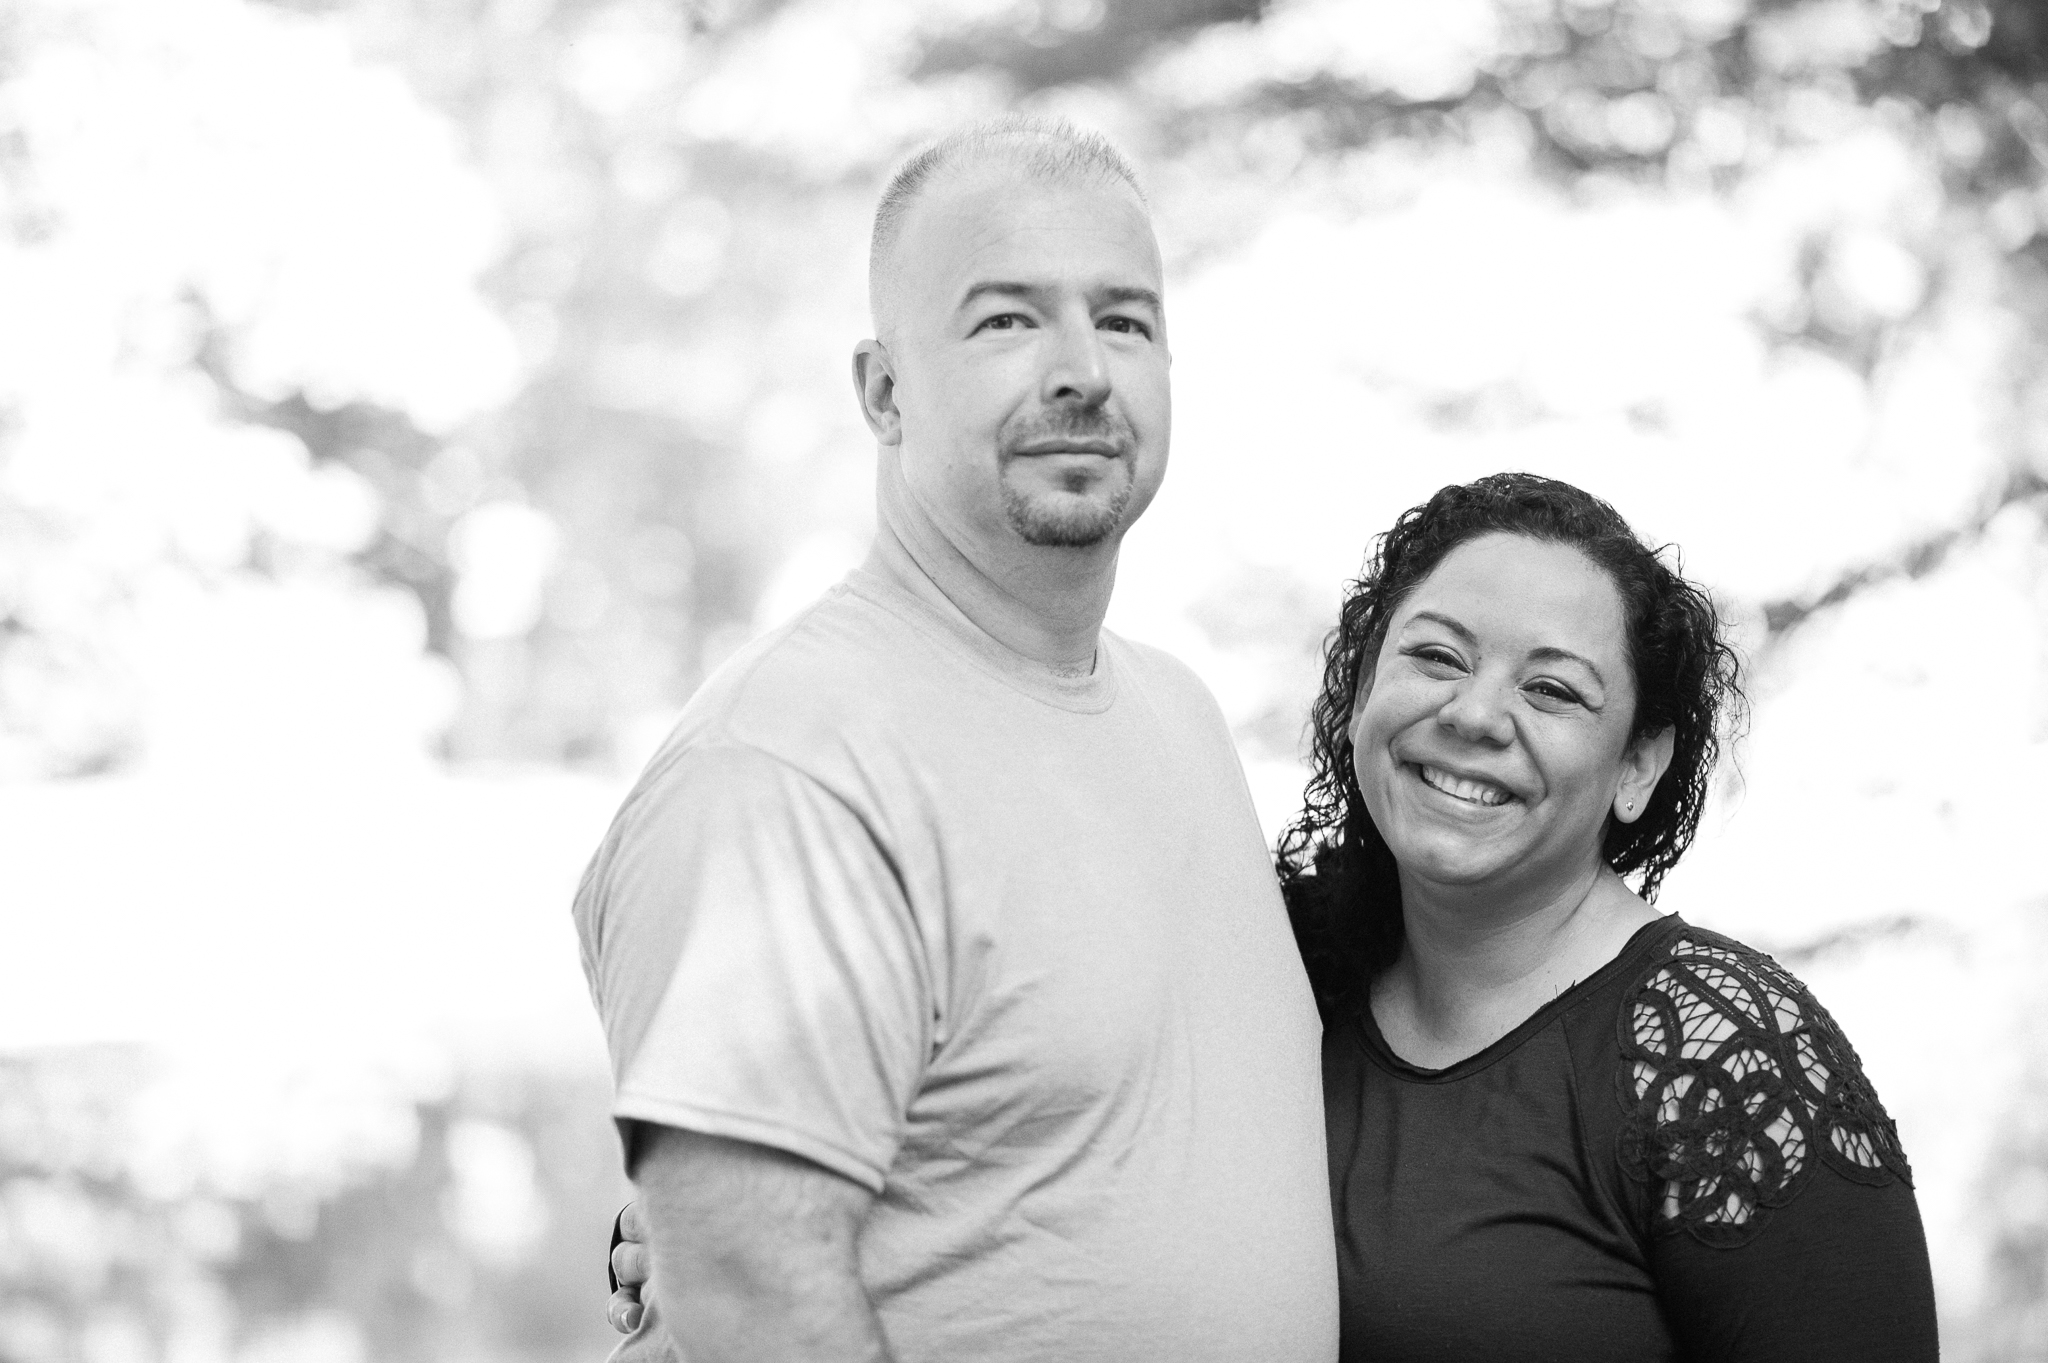  Rina and David Engagement 06/11/17. Photo Credit: Nicholas Karlin karlinvillondo.com 